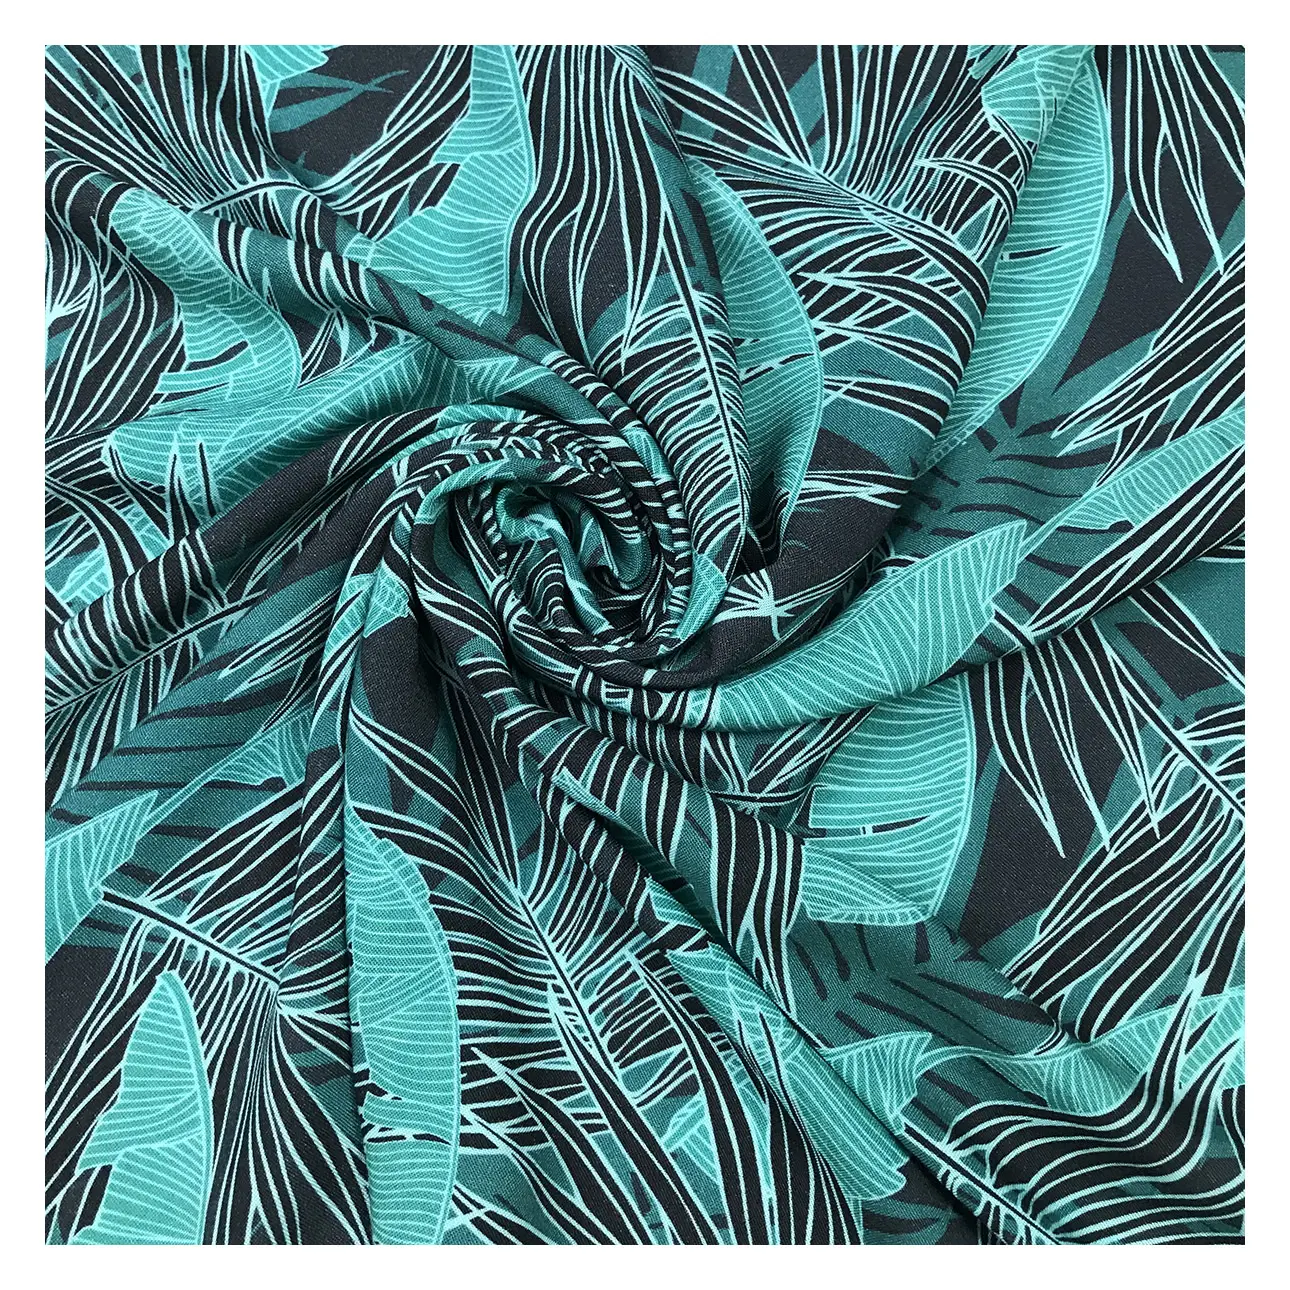 Rayon Atacado Barato Viscose Tecido para Vestuário Folha de Banana Tropical Design Impressão Digital Hot Selling Green Woven Plain GB